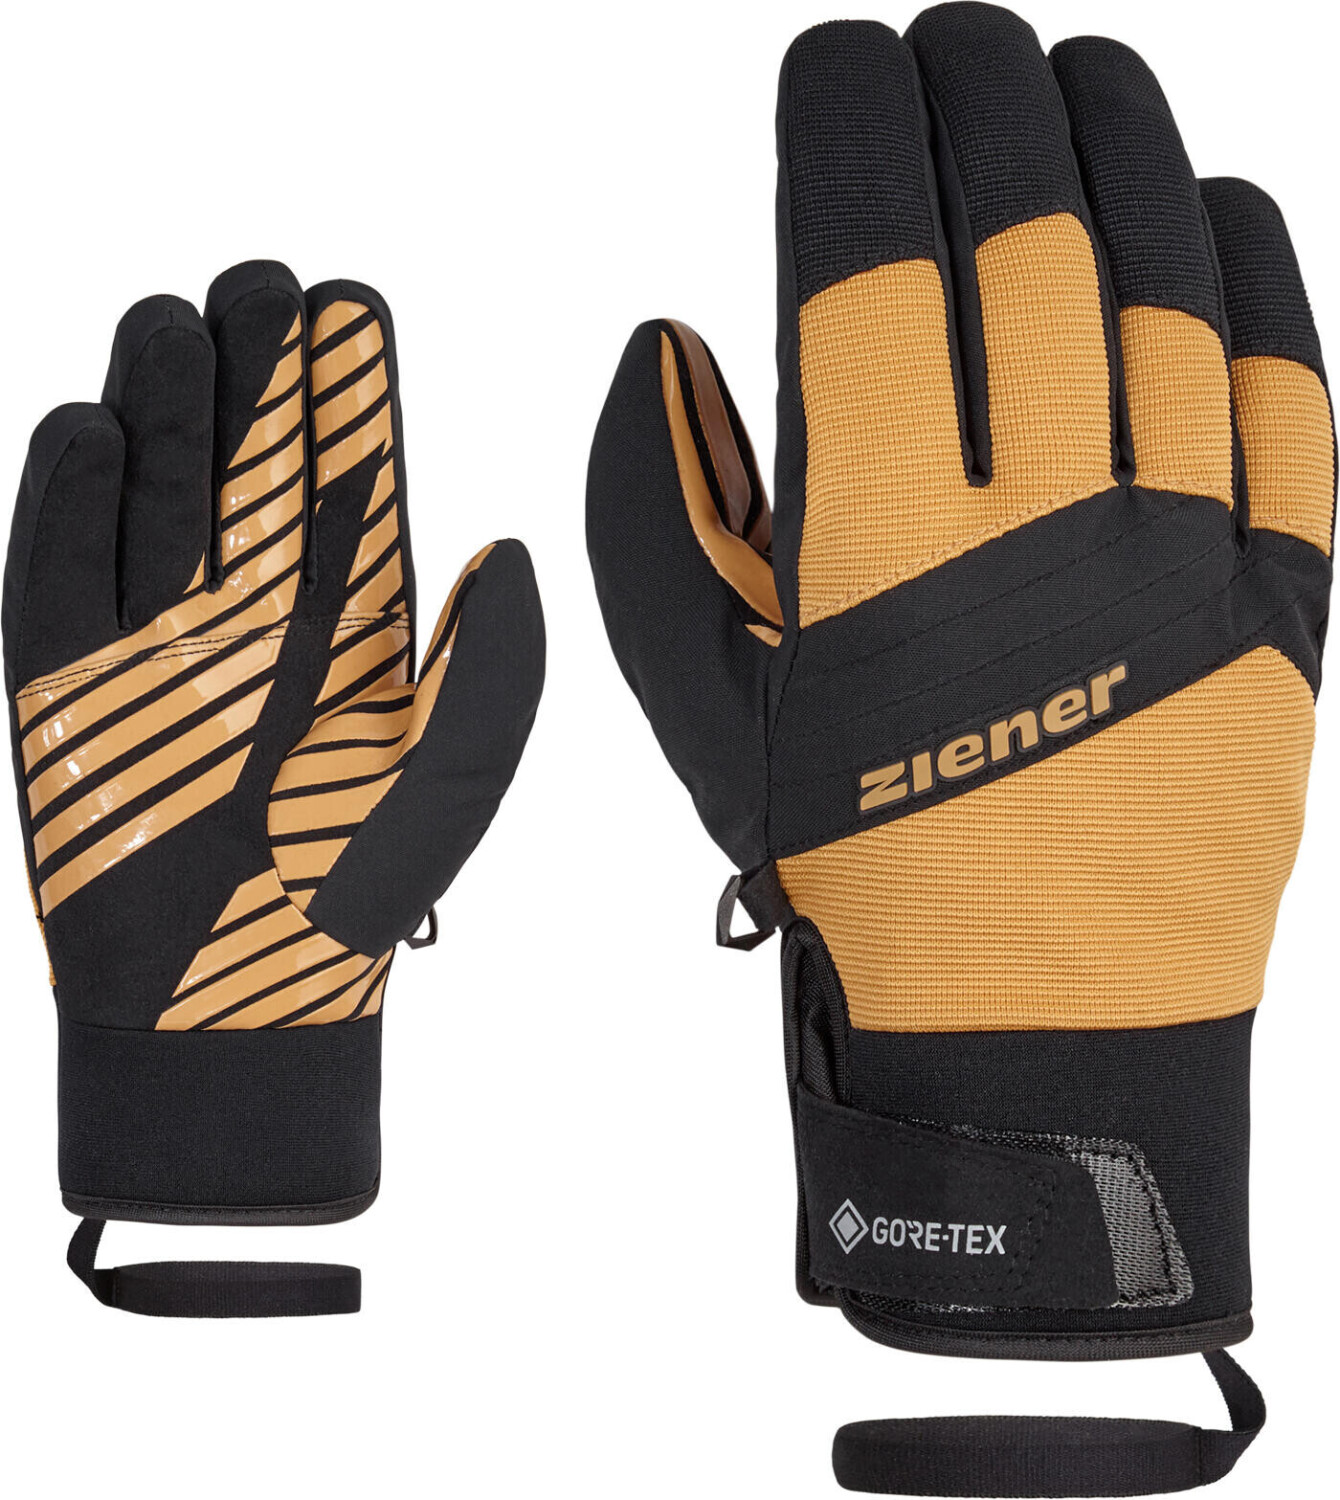 Ziener Gence GTX Glove Ski Alpine tan ab 58,80 € | Preisvergleich bei | Handschuhe